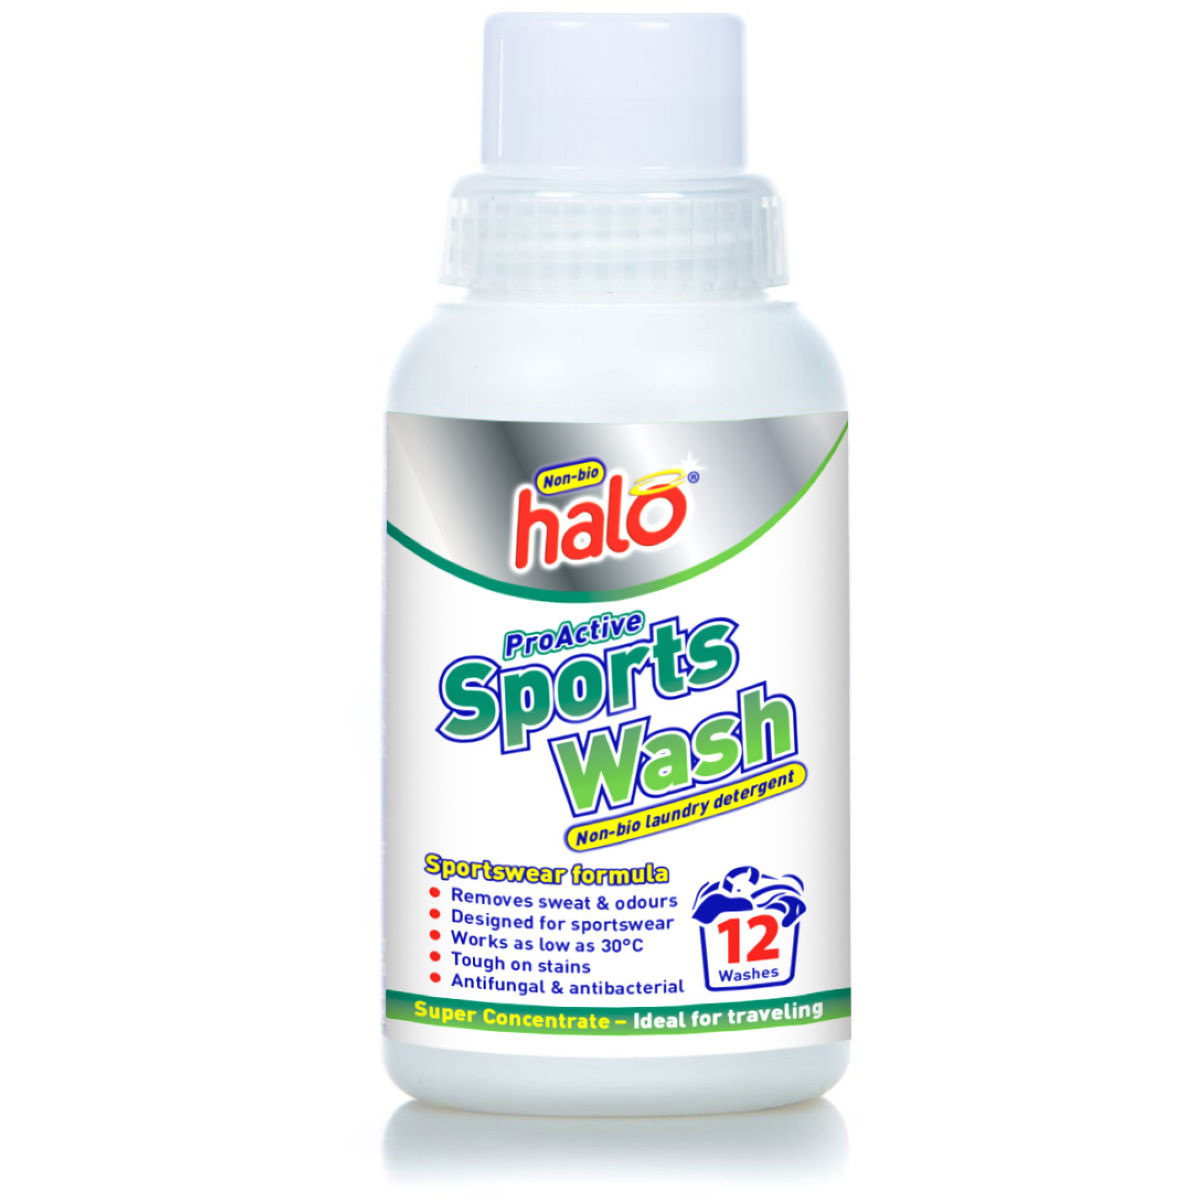 Detergente concentrado Halo Proactive - Sports Wash (250 ml) - Limpiadores de tejidos